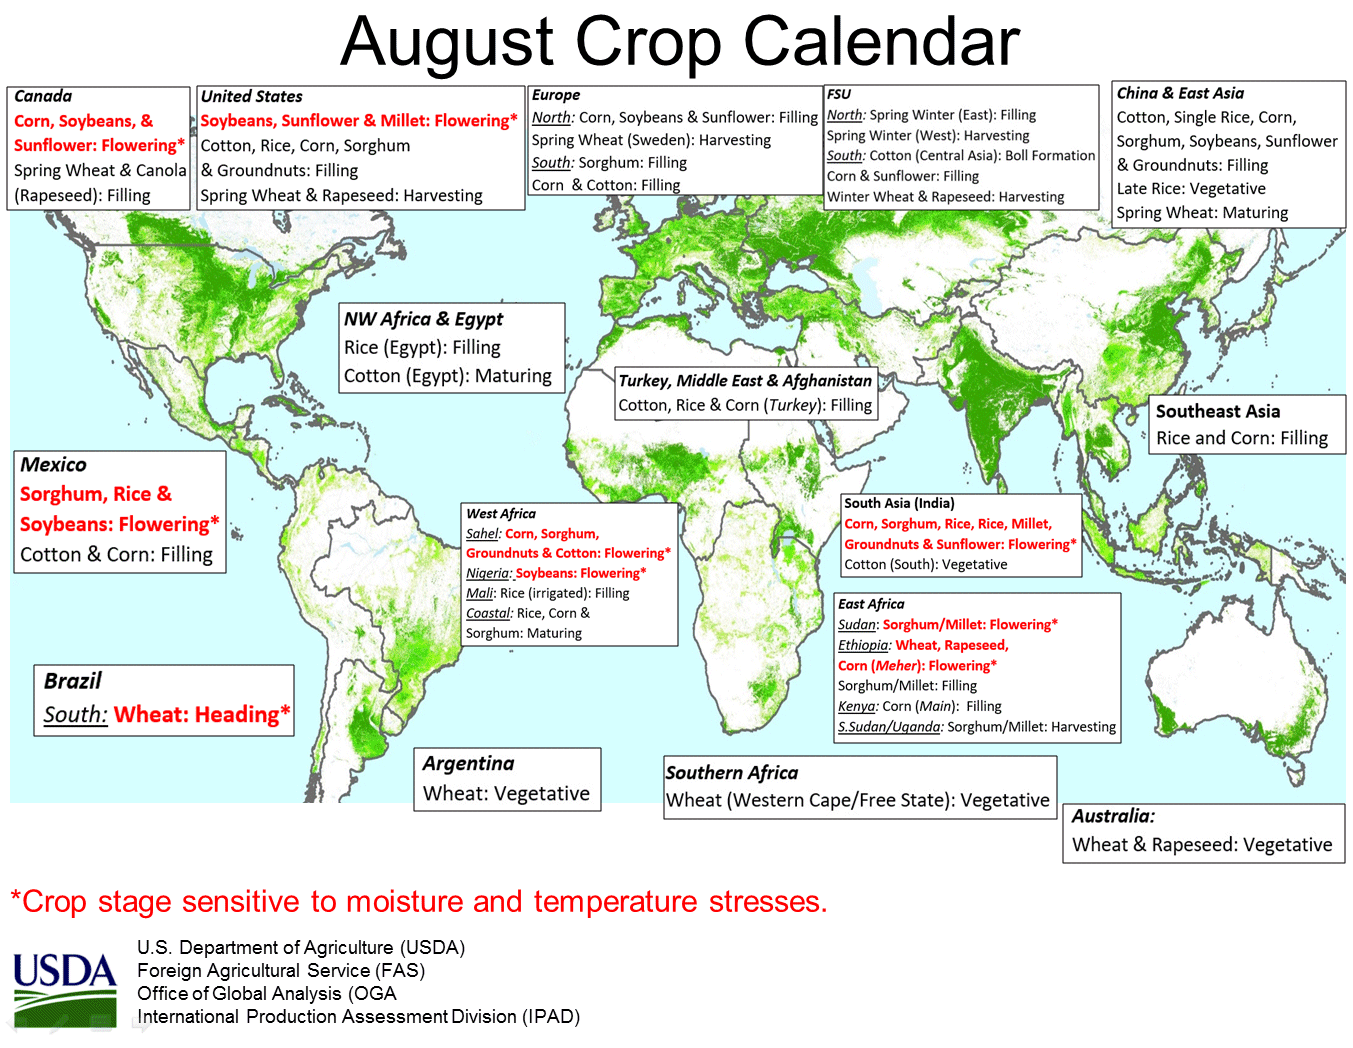 Spring 2022 Rice Calendar Crop Calendar - Fertimertics